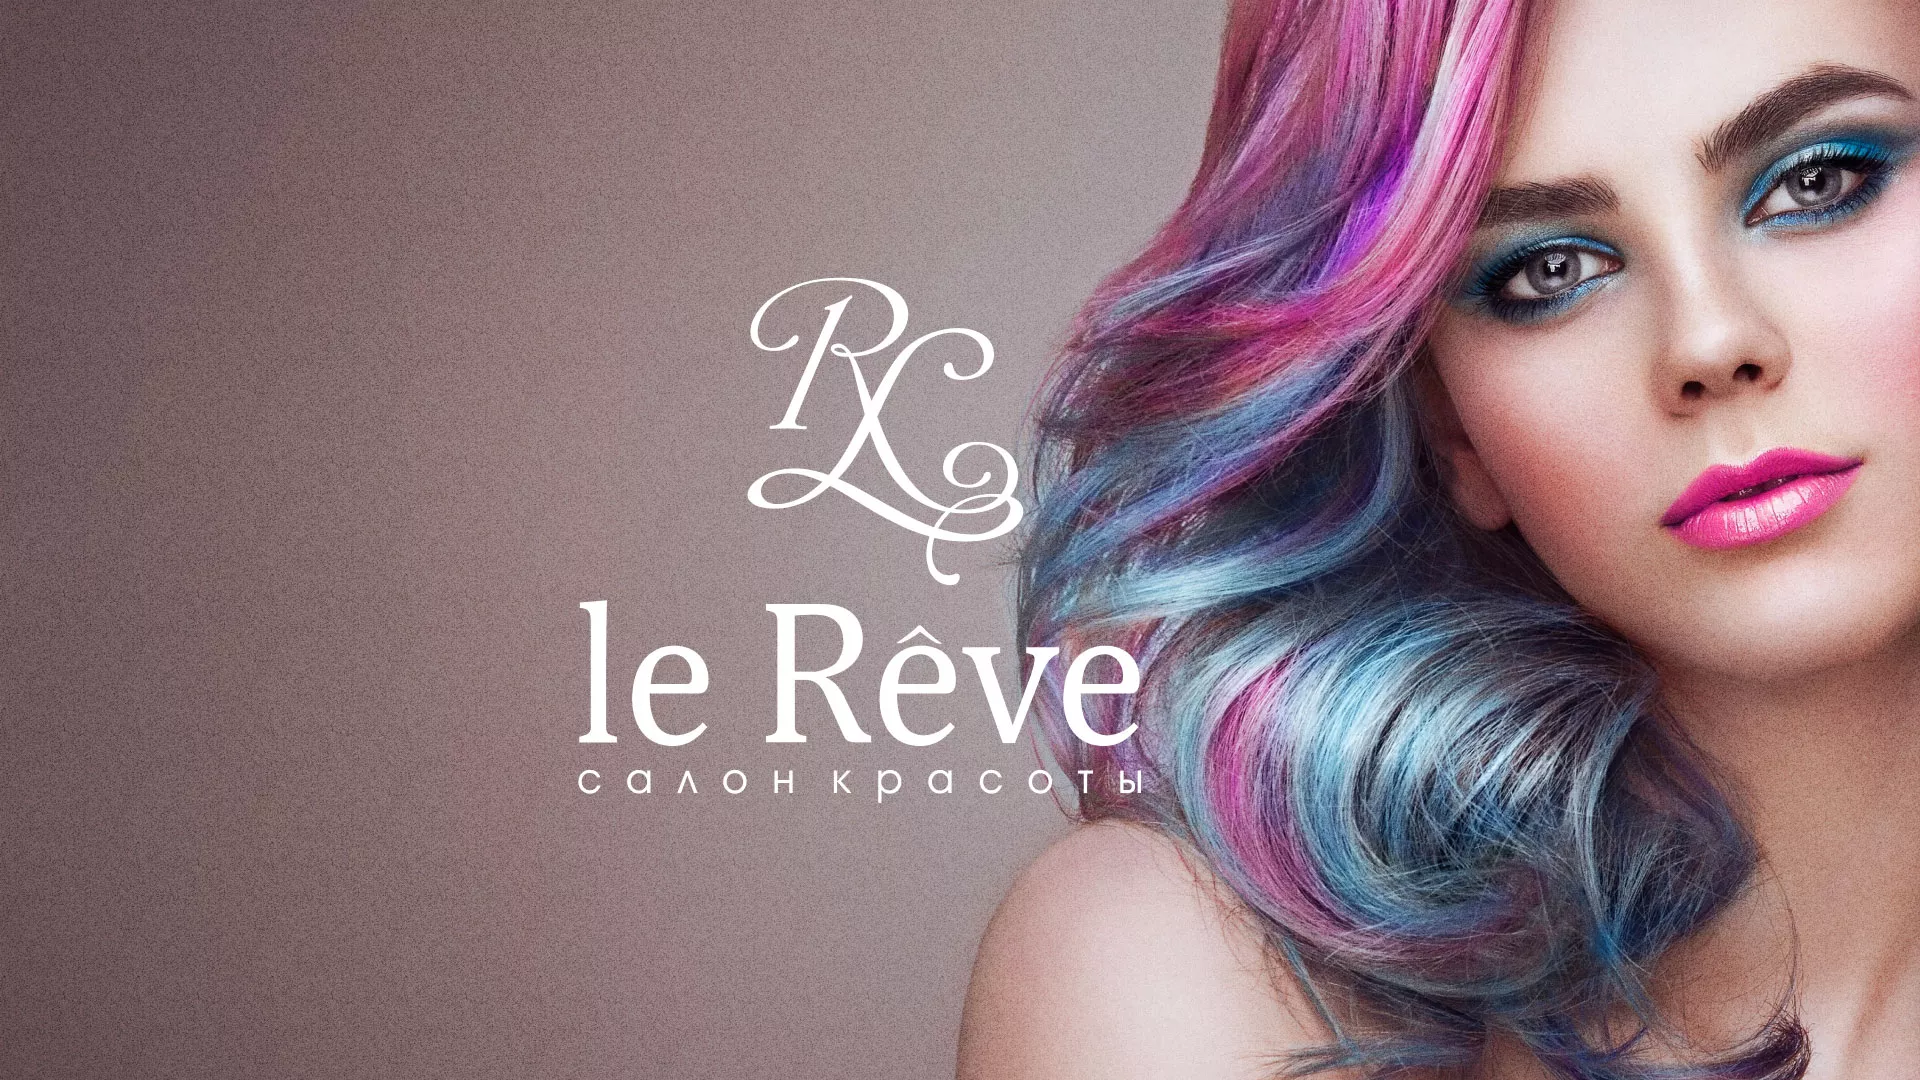 Создание сайта для салона красоты «Le Reve» в Жуковке